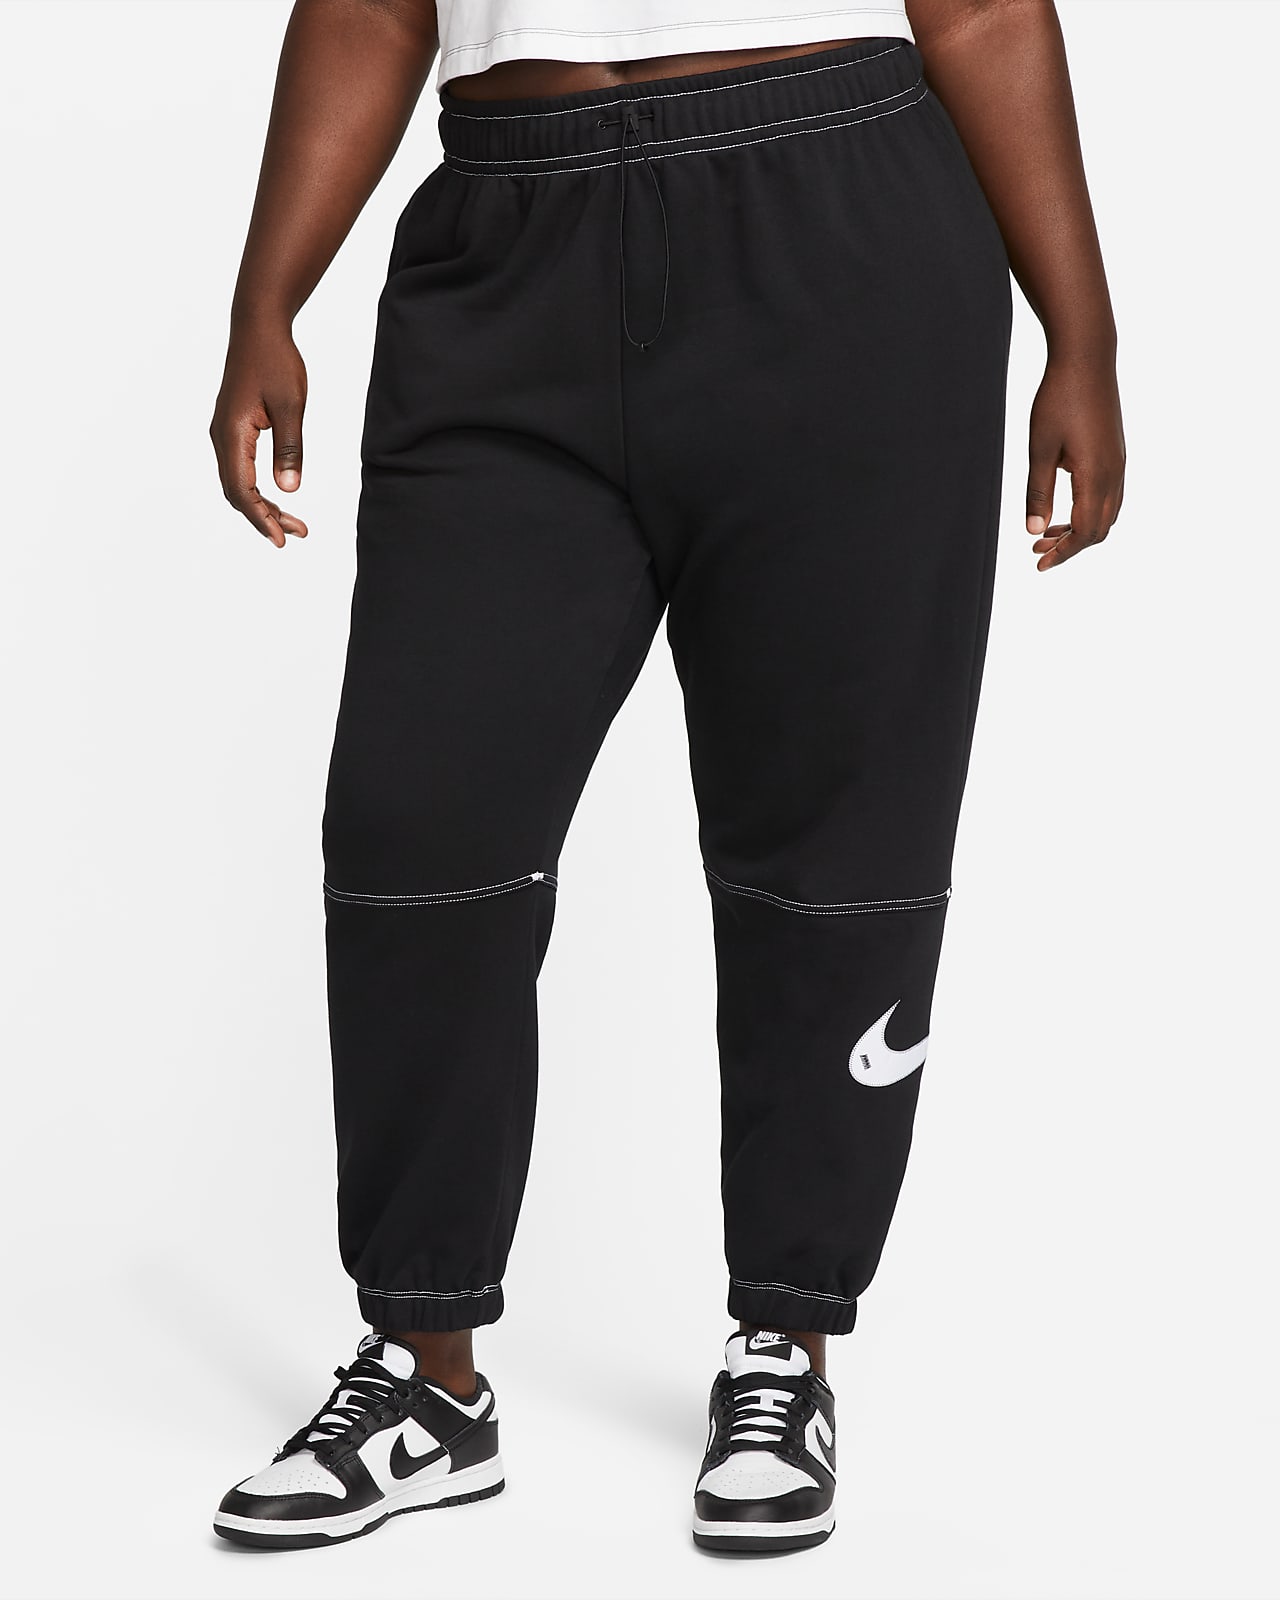 Γυναικείο ψηλόμεσο παντελόνι φόρμας Nike Sportswear Swoosh (μεγάλα μεγέθη)